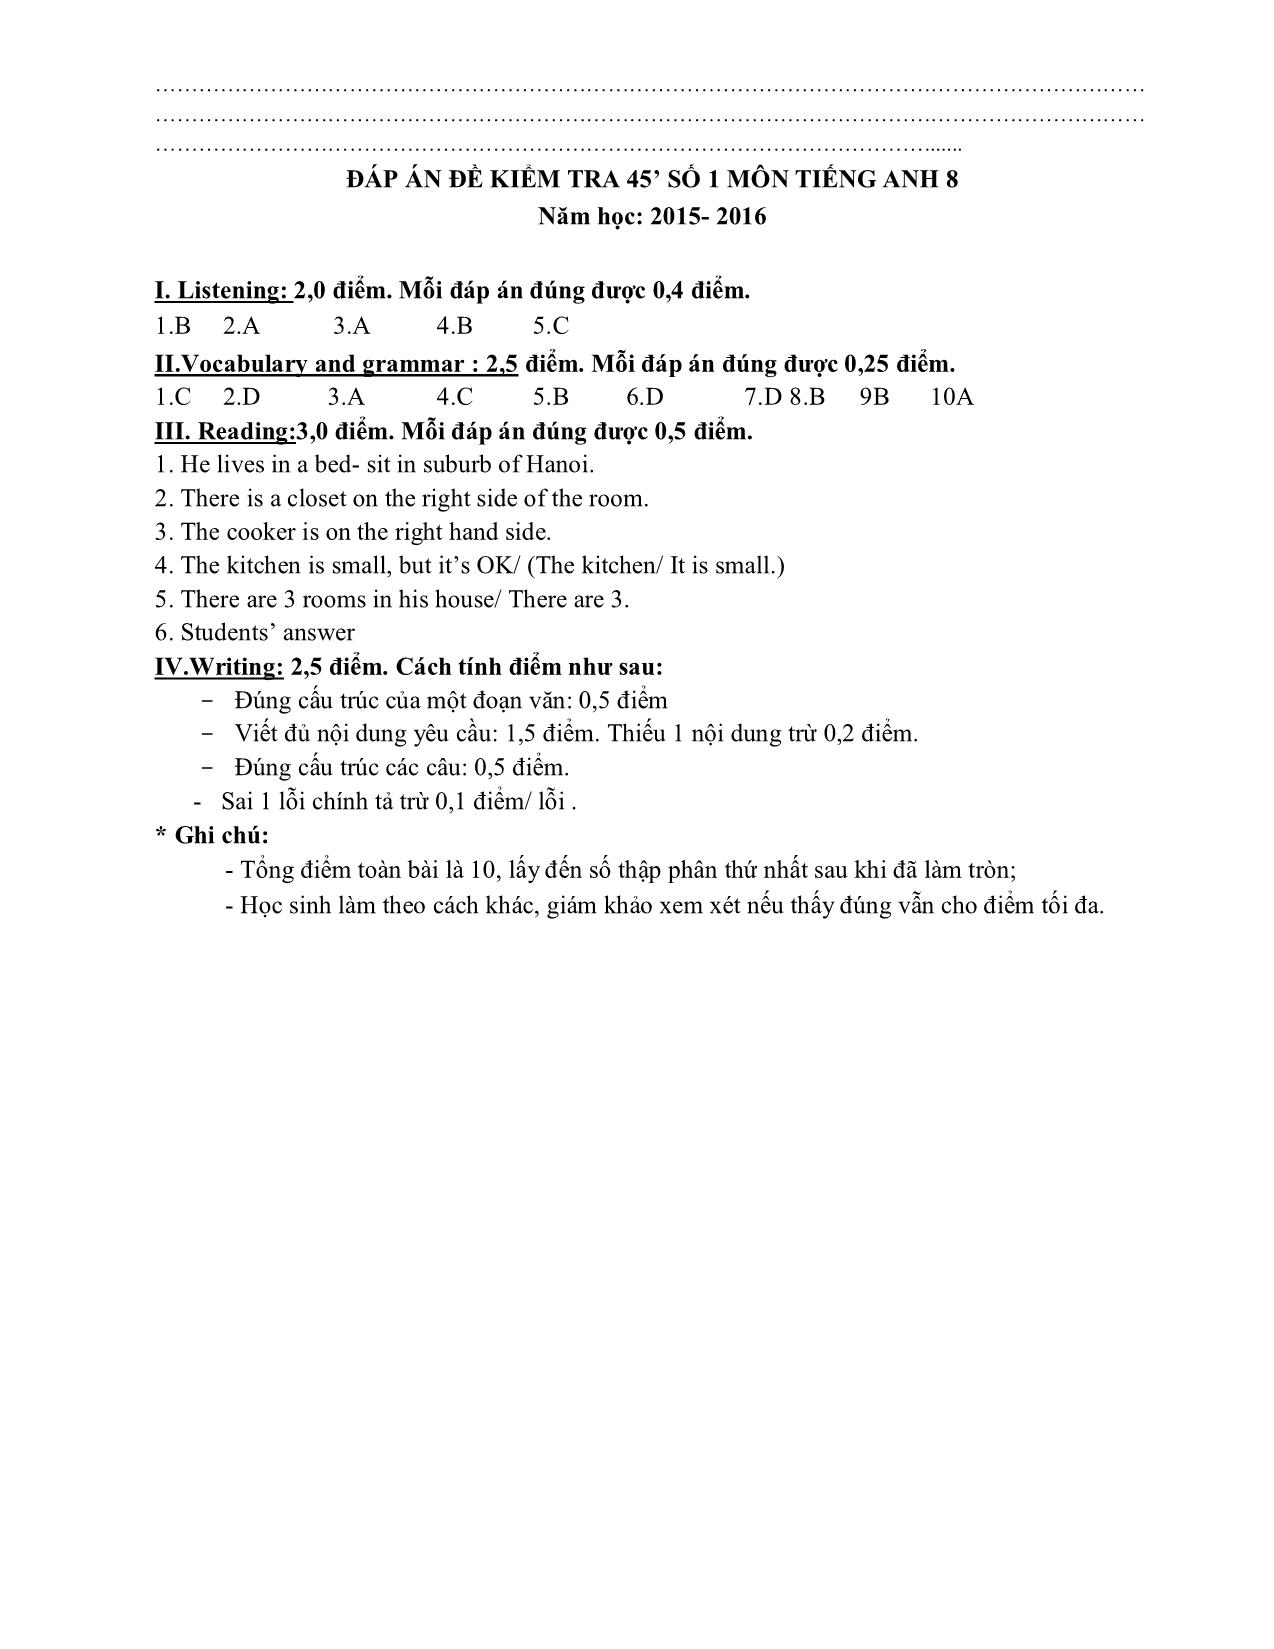 Bài kiểm tra 45 phút số 1 môn tiếng Anh Lớp 8 - Năm học 2015-2016 trang 3